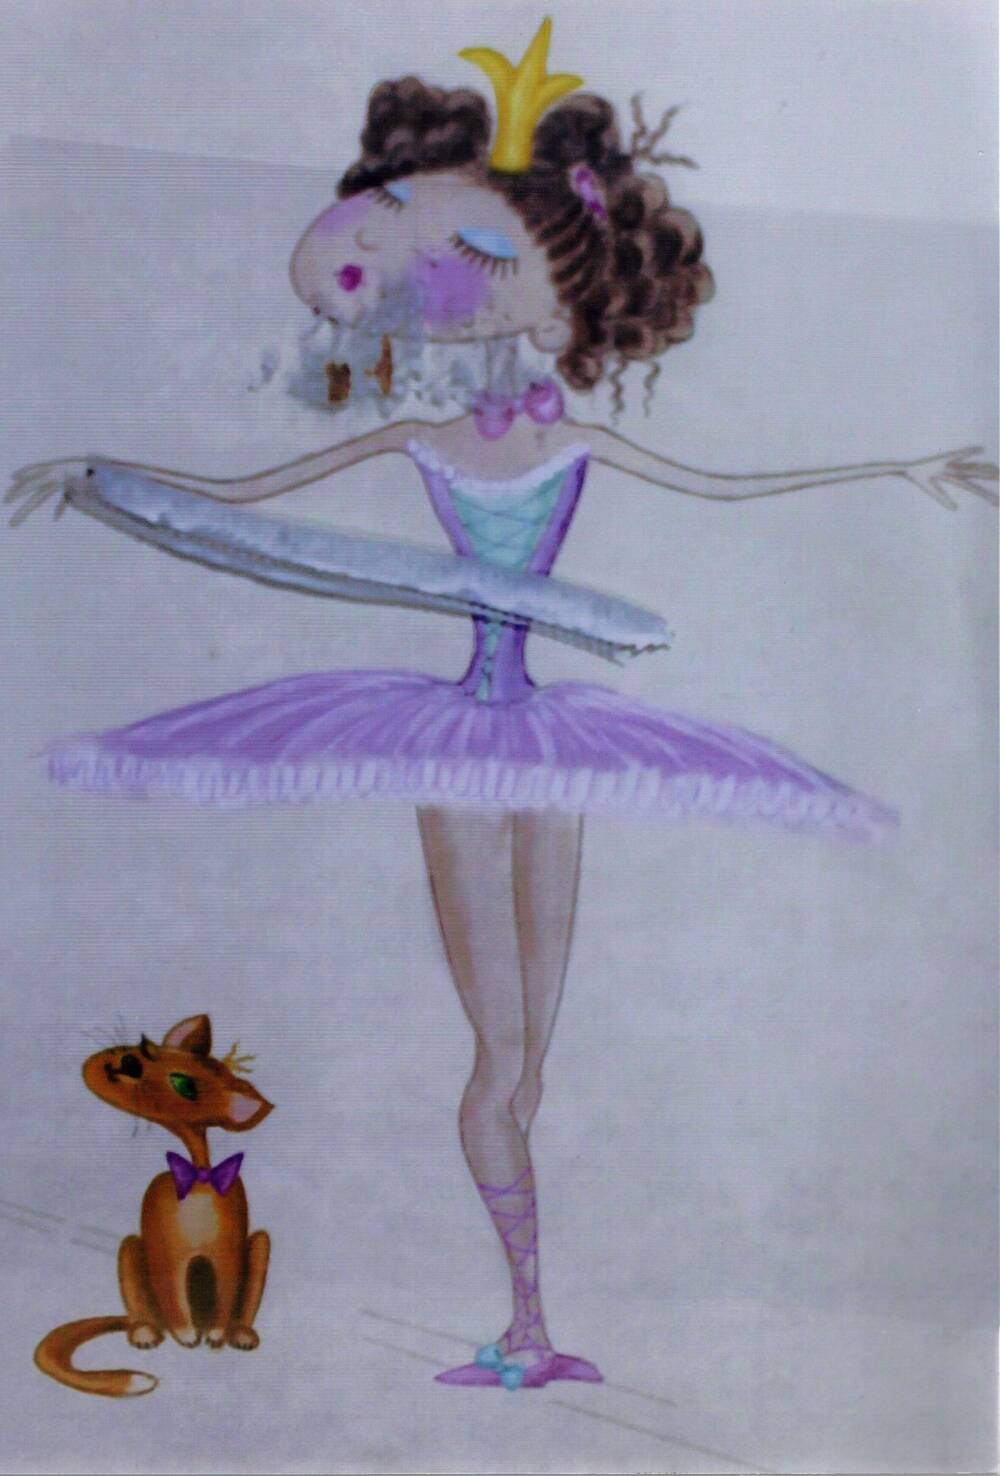 Картина Балерина